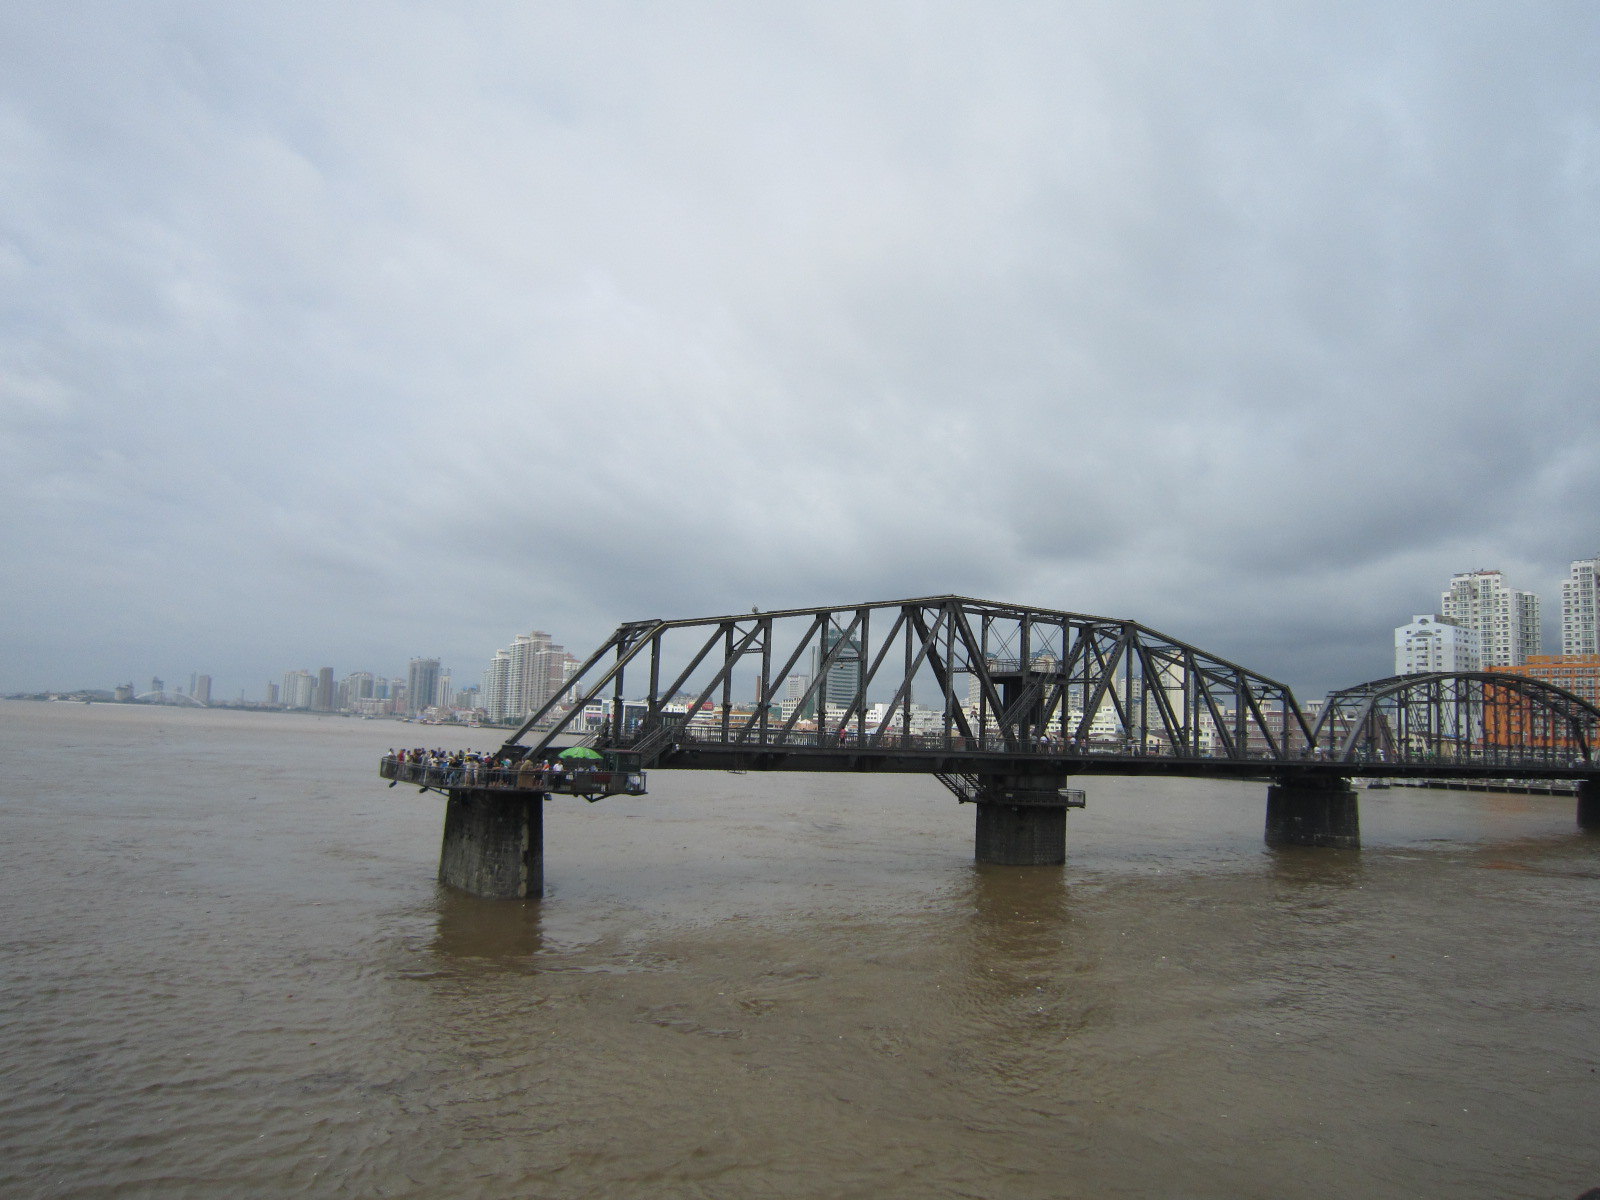 【携程攻略】丹东鸭绿江断桥景点,鸭绿江断桥是丹东的